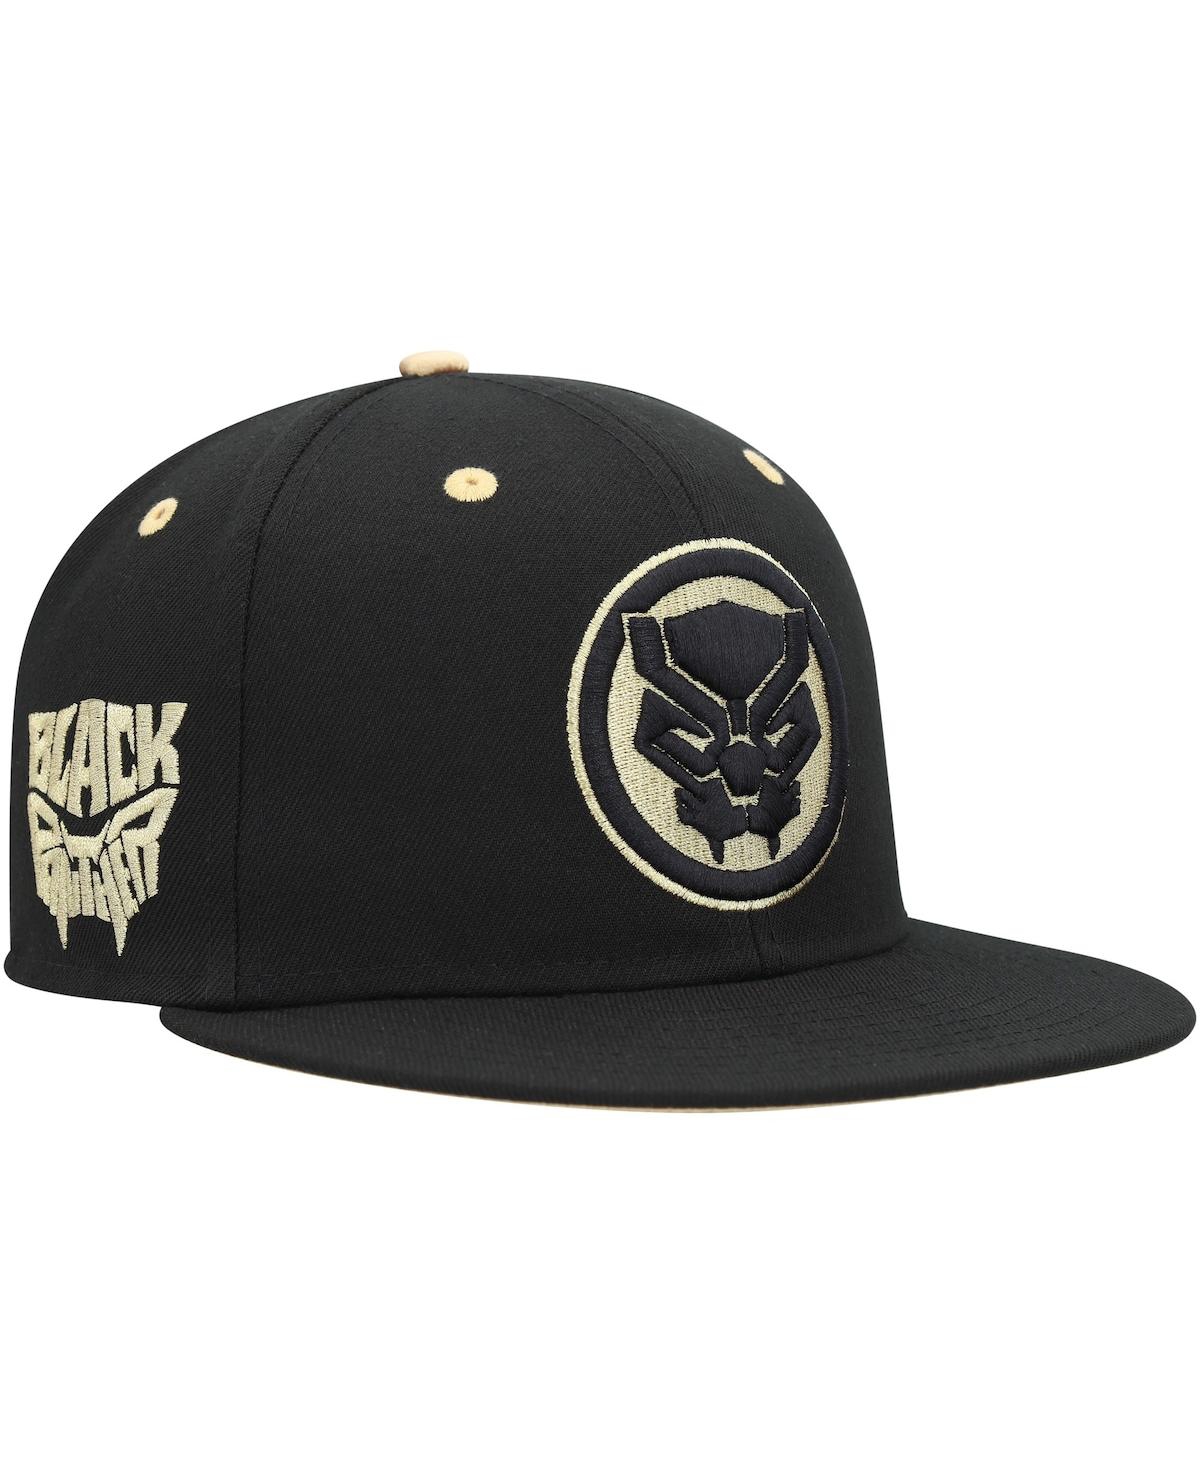 Men's Marvel Black Black Panther Fitted Hat - Black